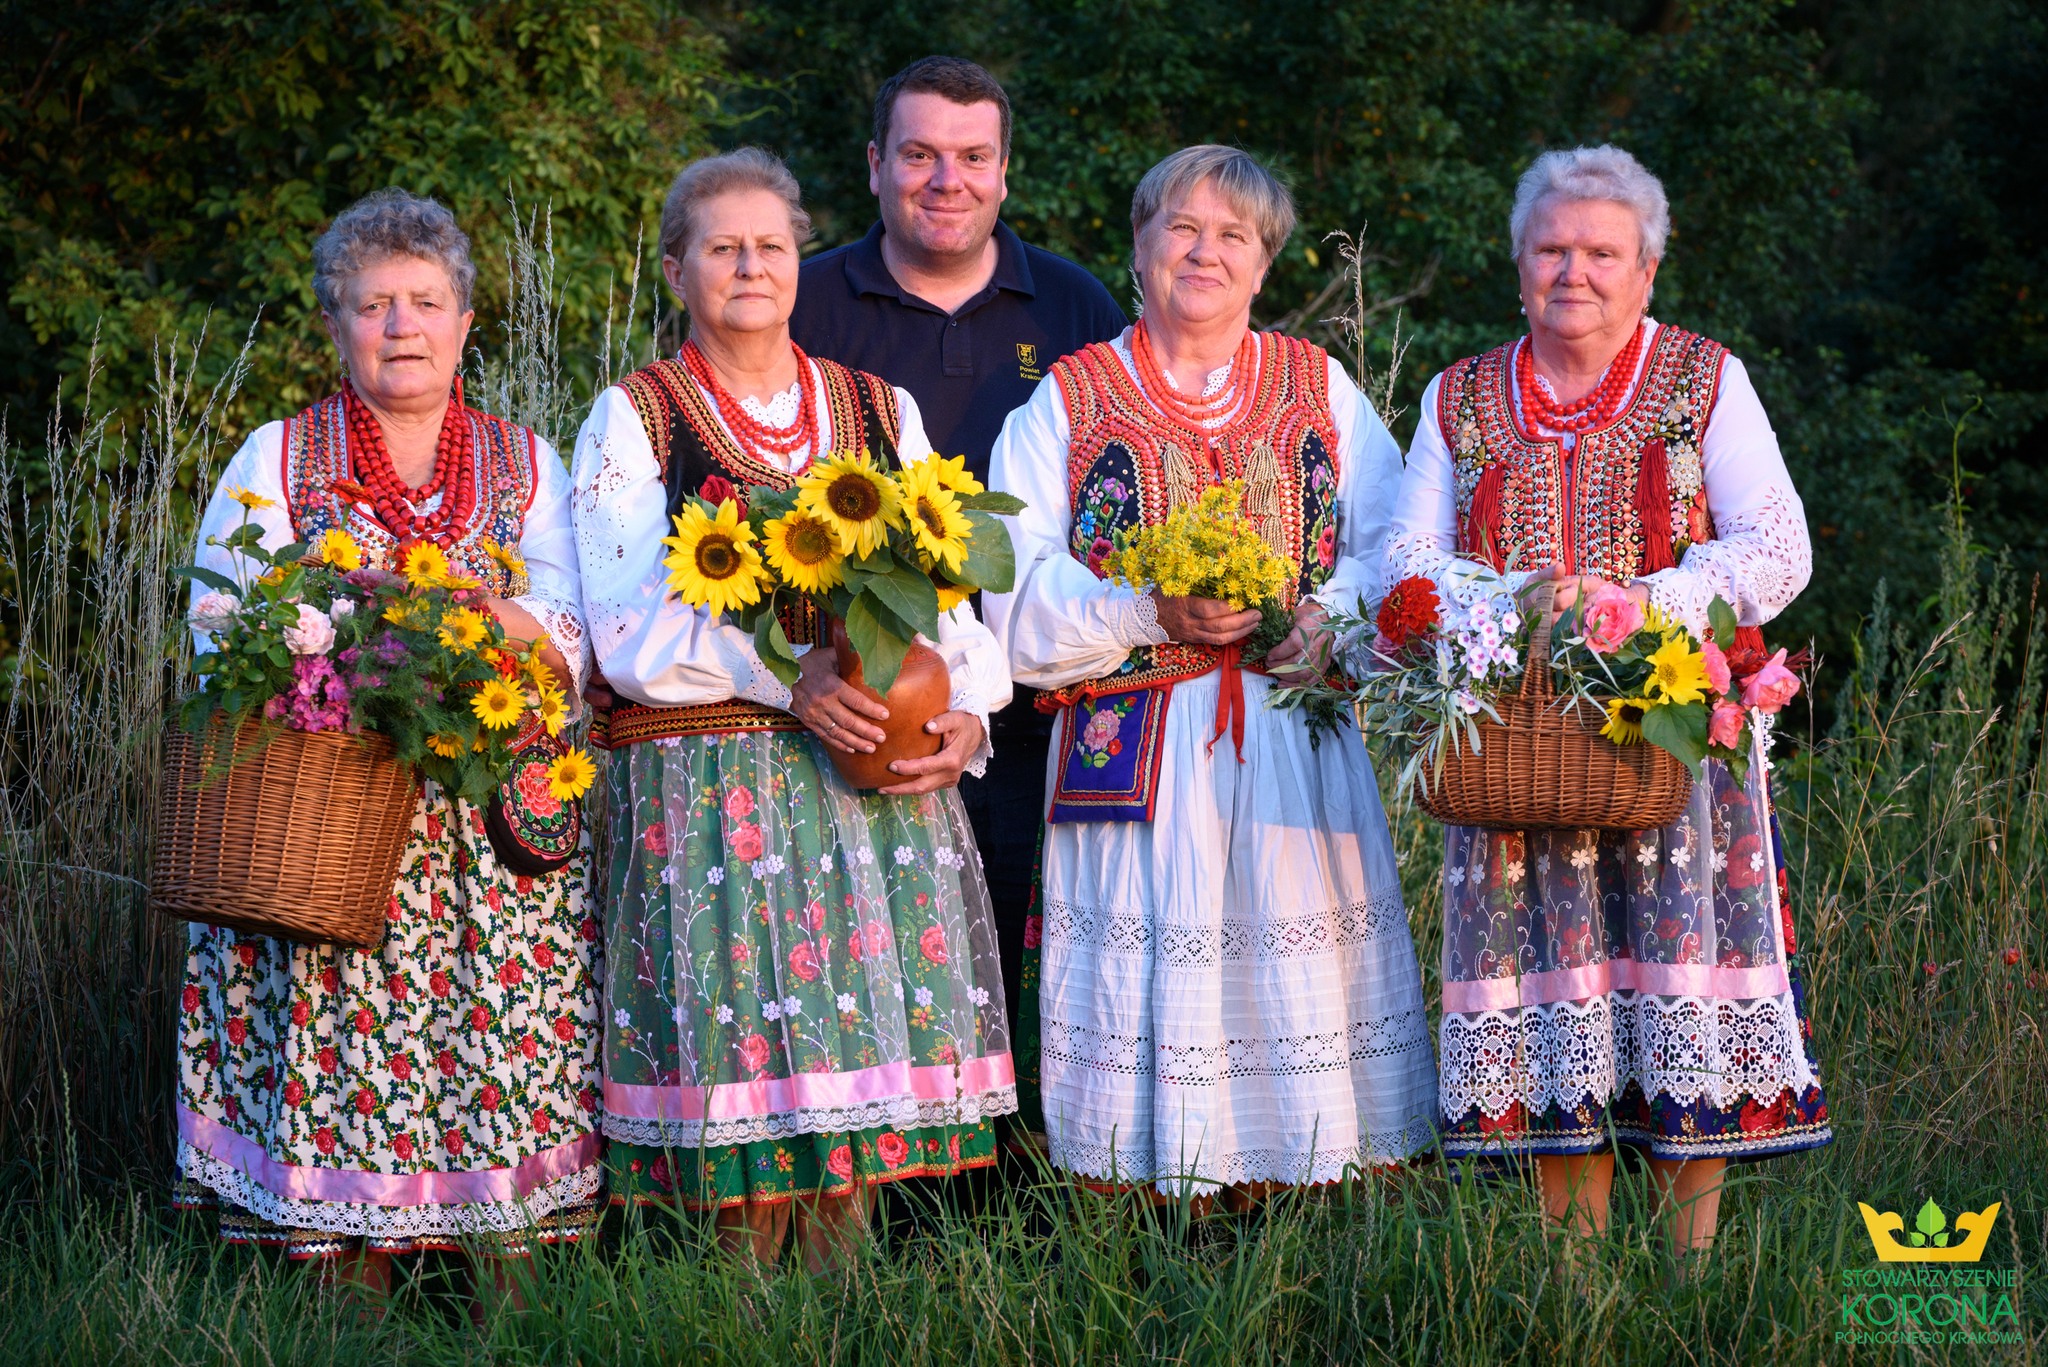 zdjęcie przedstawia cztery kobiety w strojach krakowskich i mężczyznę za nimi w plenerze